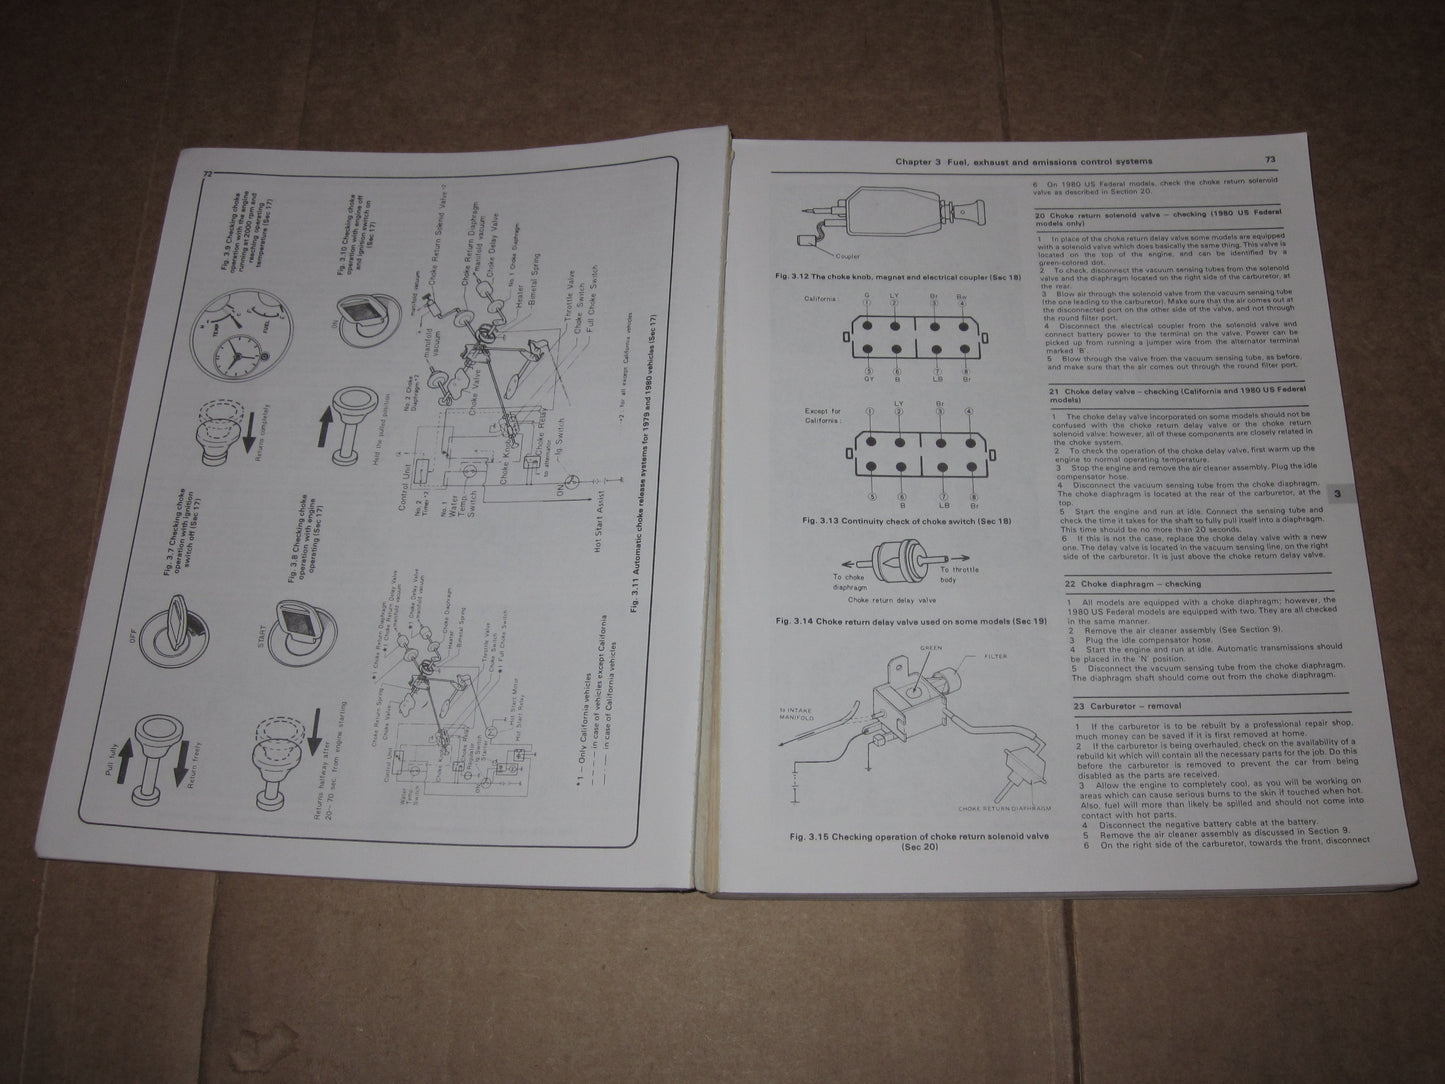 79 80 81 82 83 84 85 Mazda RX7 Repair Manual